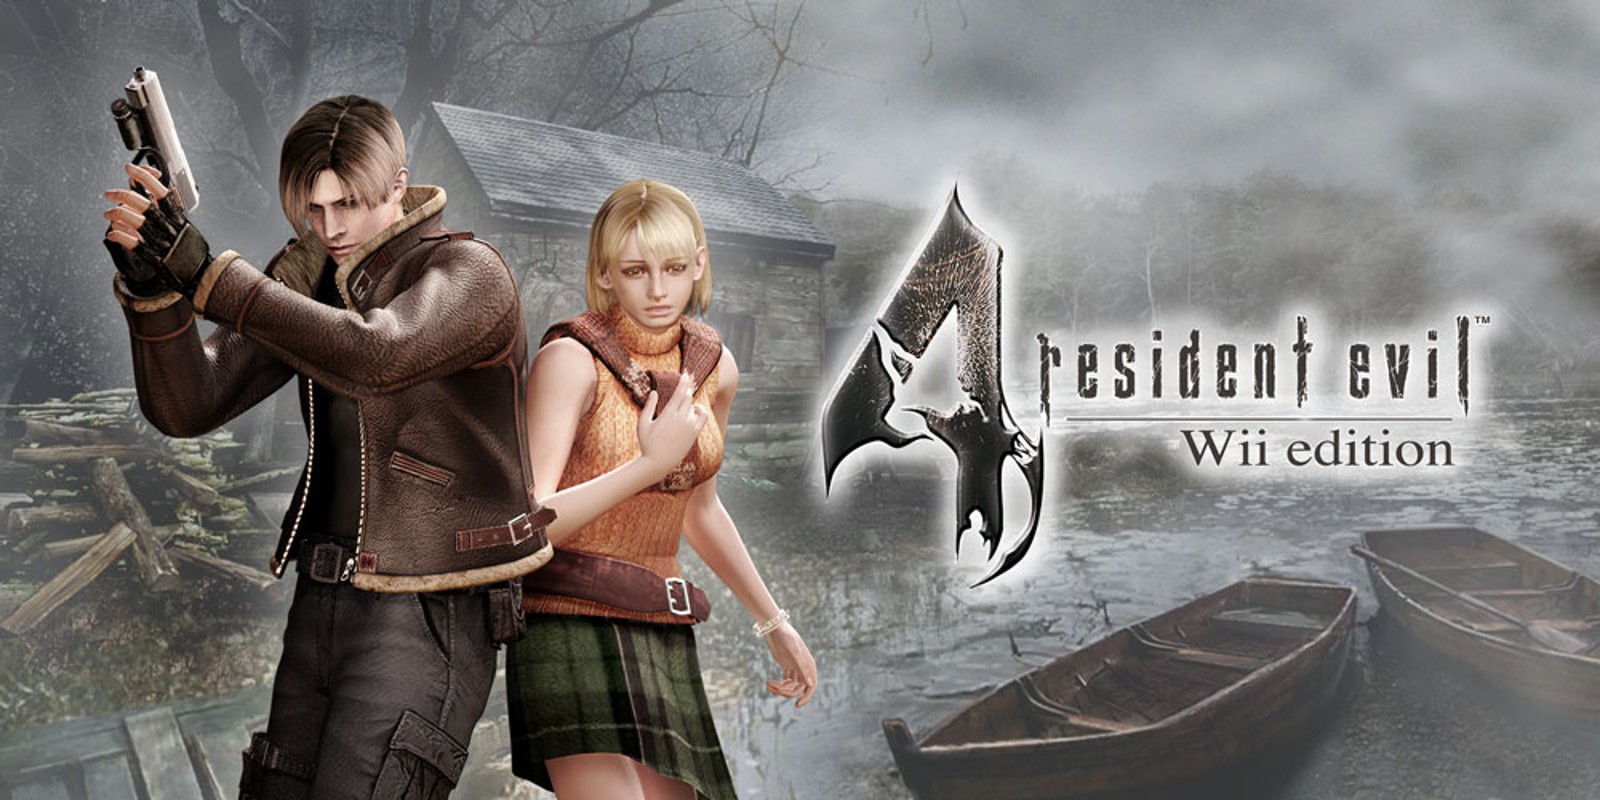 Прохождение игры Resident Evil 4 - Ultimate HD Edition # 26 (Русская версия игры) PC - Ver. HD Full.